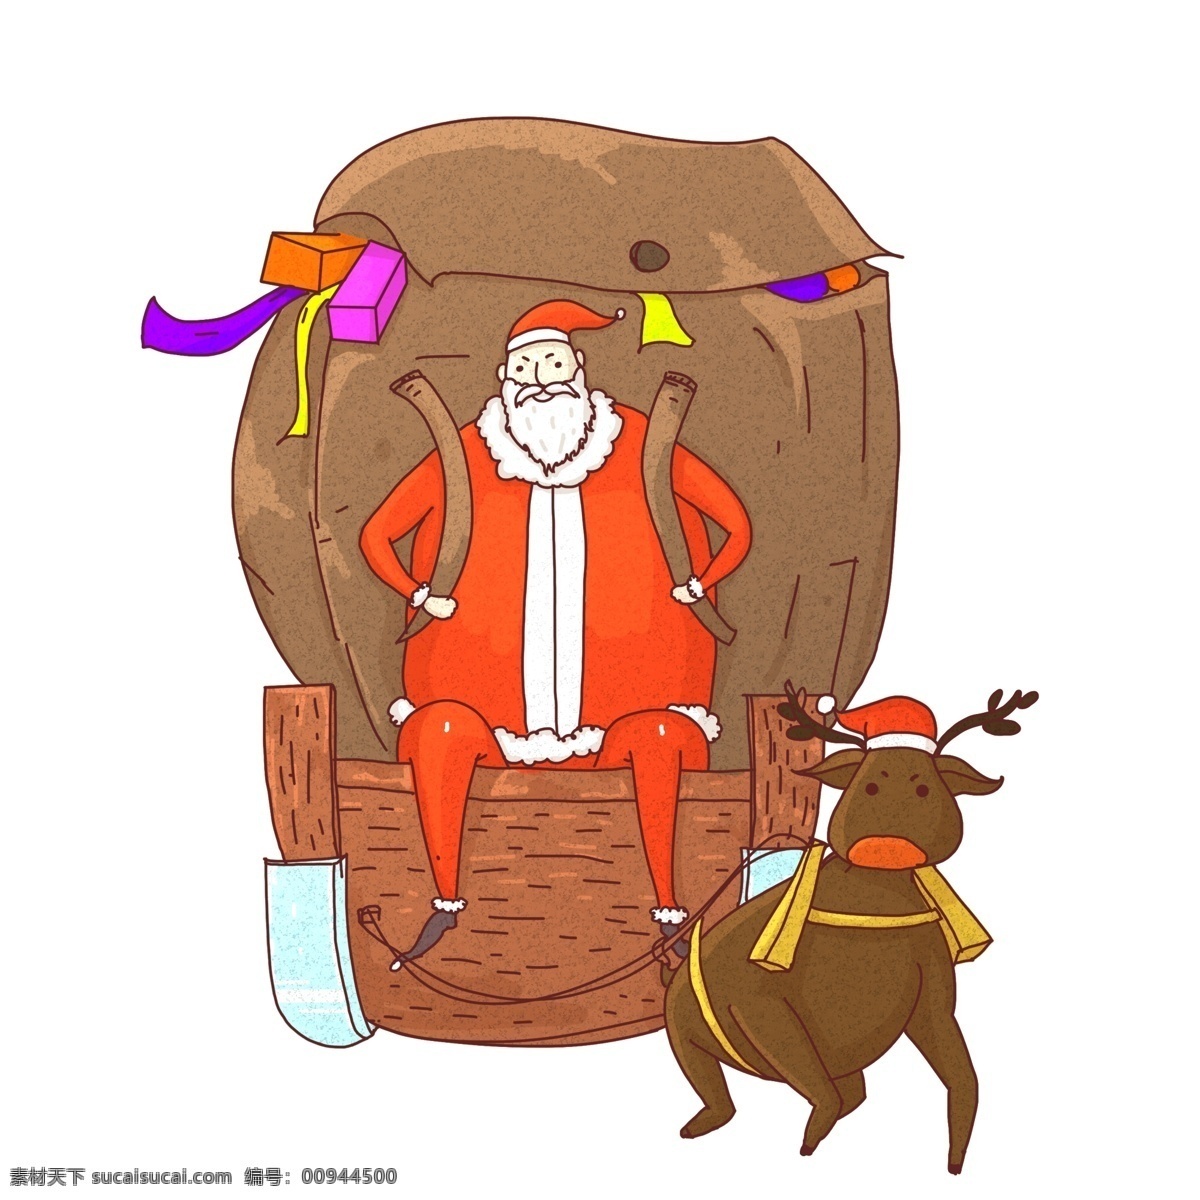 圣诞节 圣诞老人 麋鹿 背着 大礼包 插画 圣诞礼物 冬季 圣诞老人手绘 圣诞节插画 圣诞夜